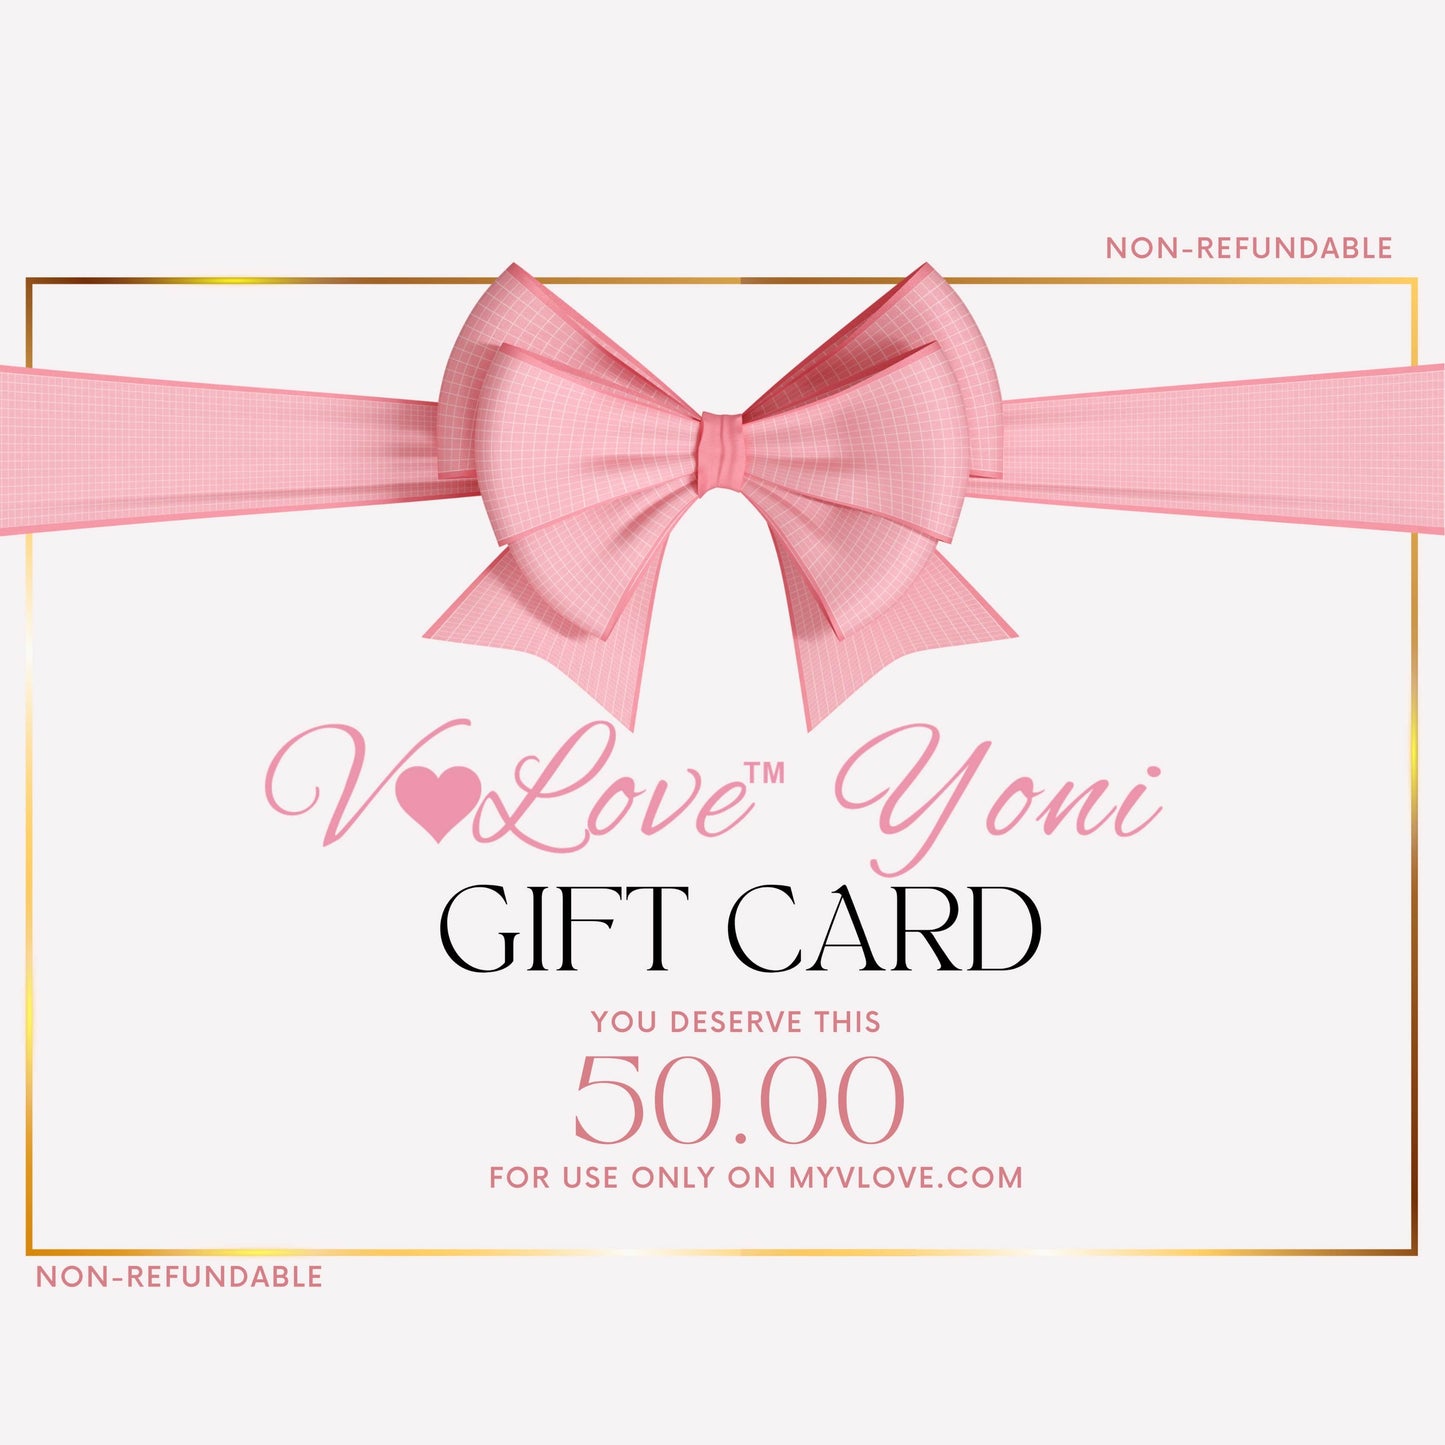 “She Deserves It” Gift Card